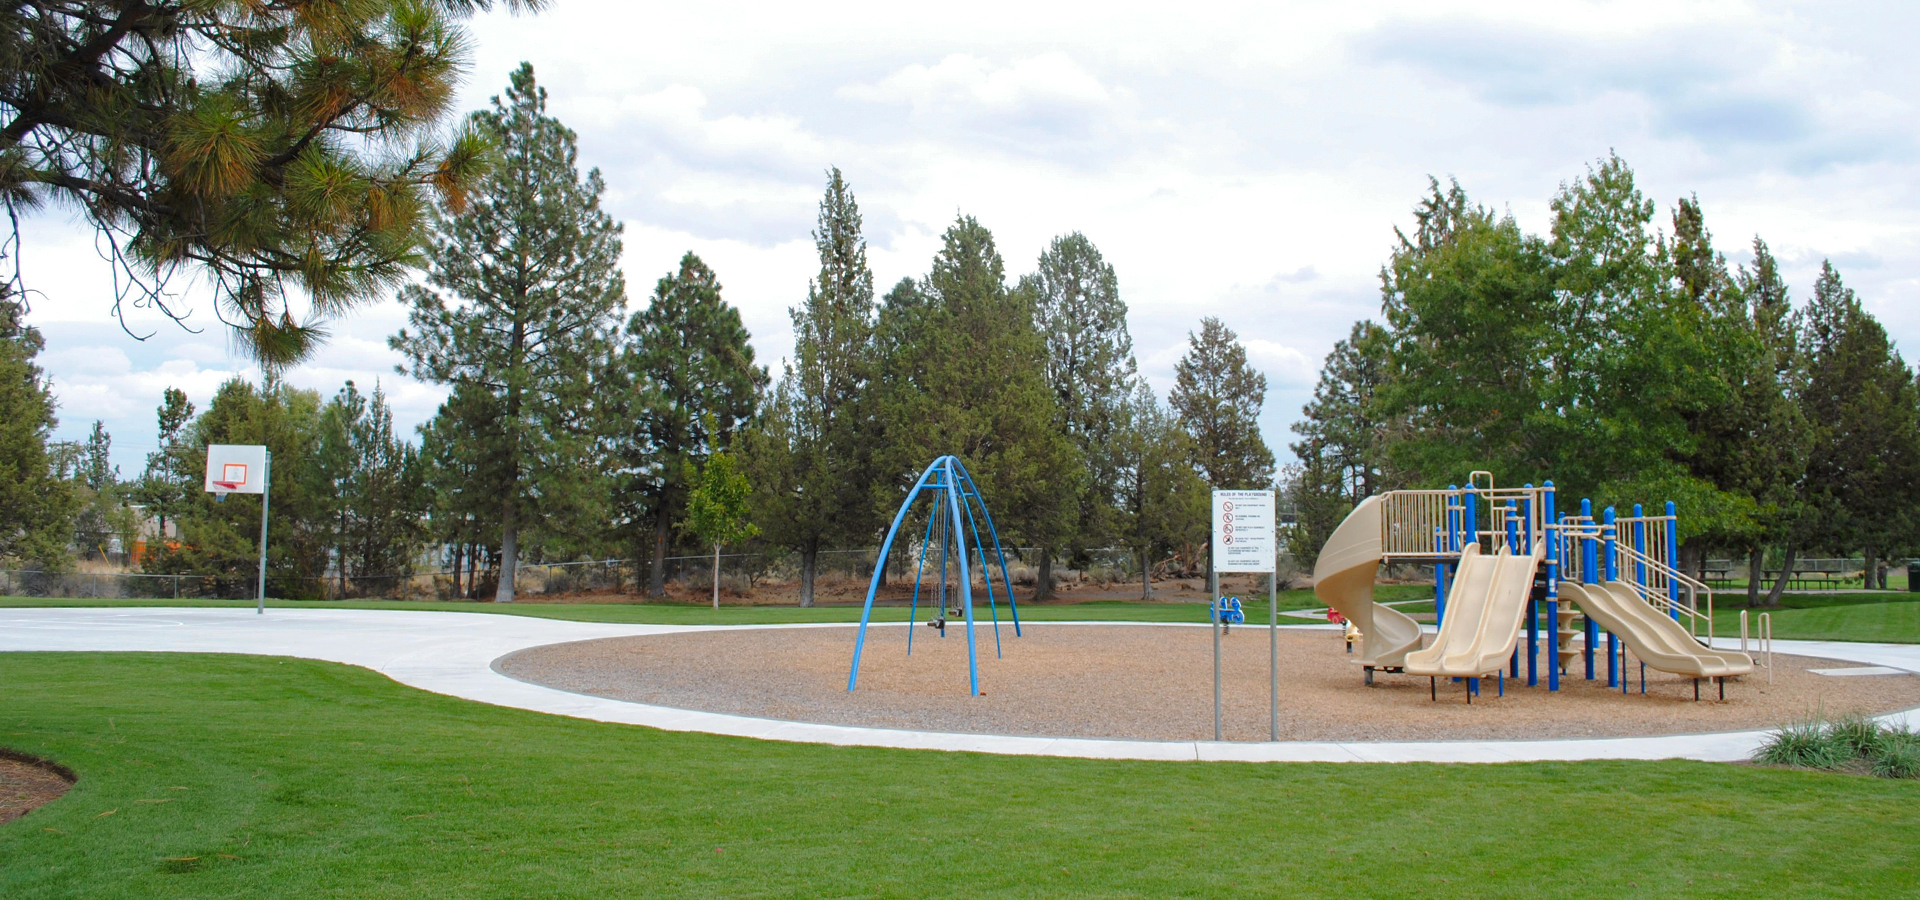 The playground at Kiwanis Park.